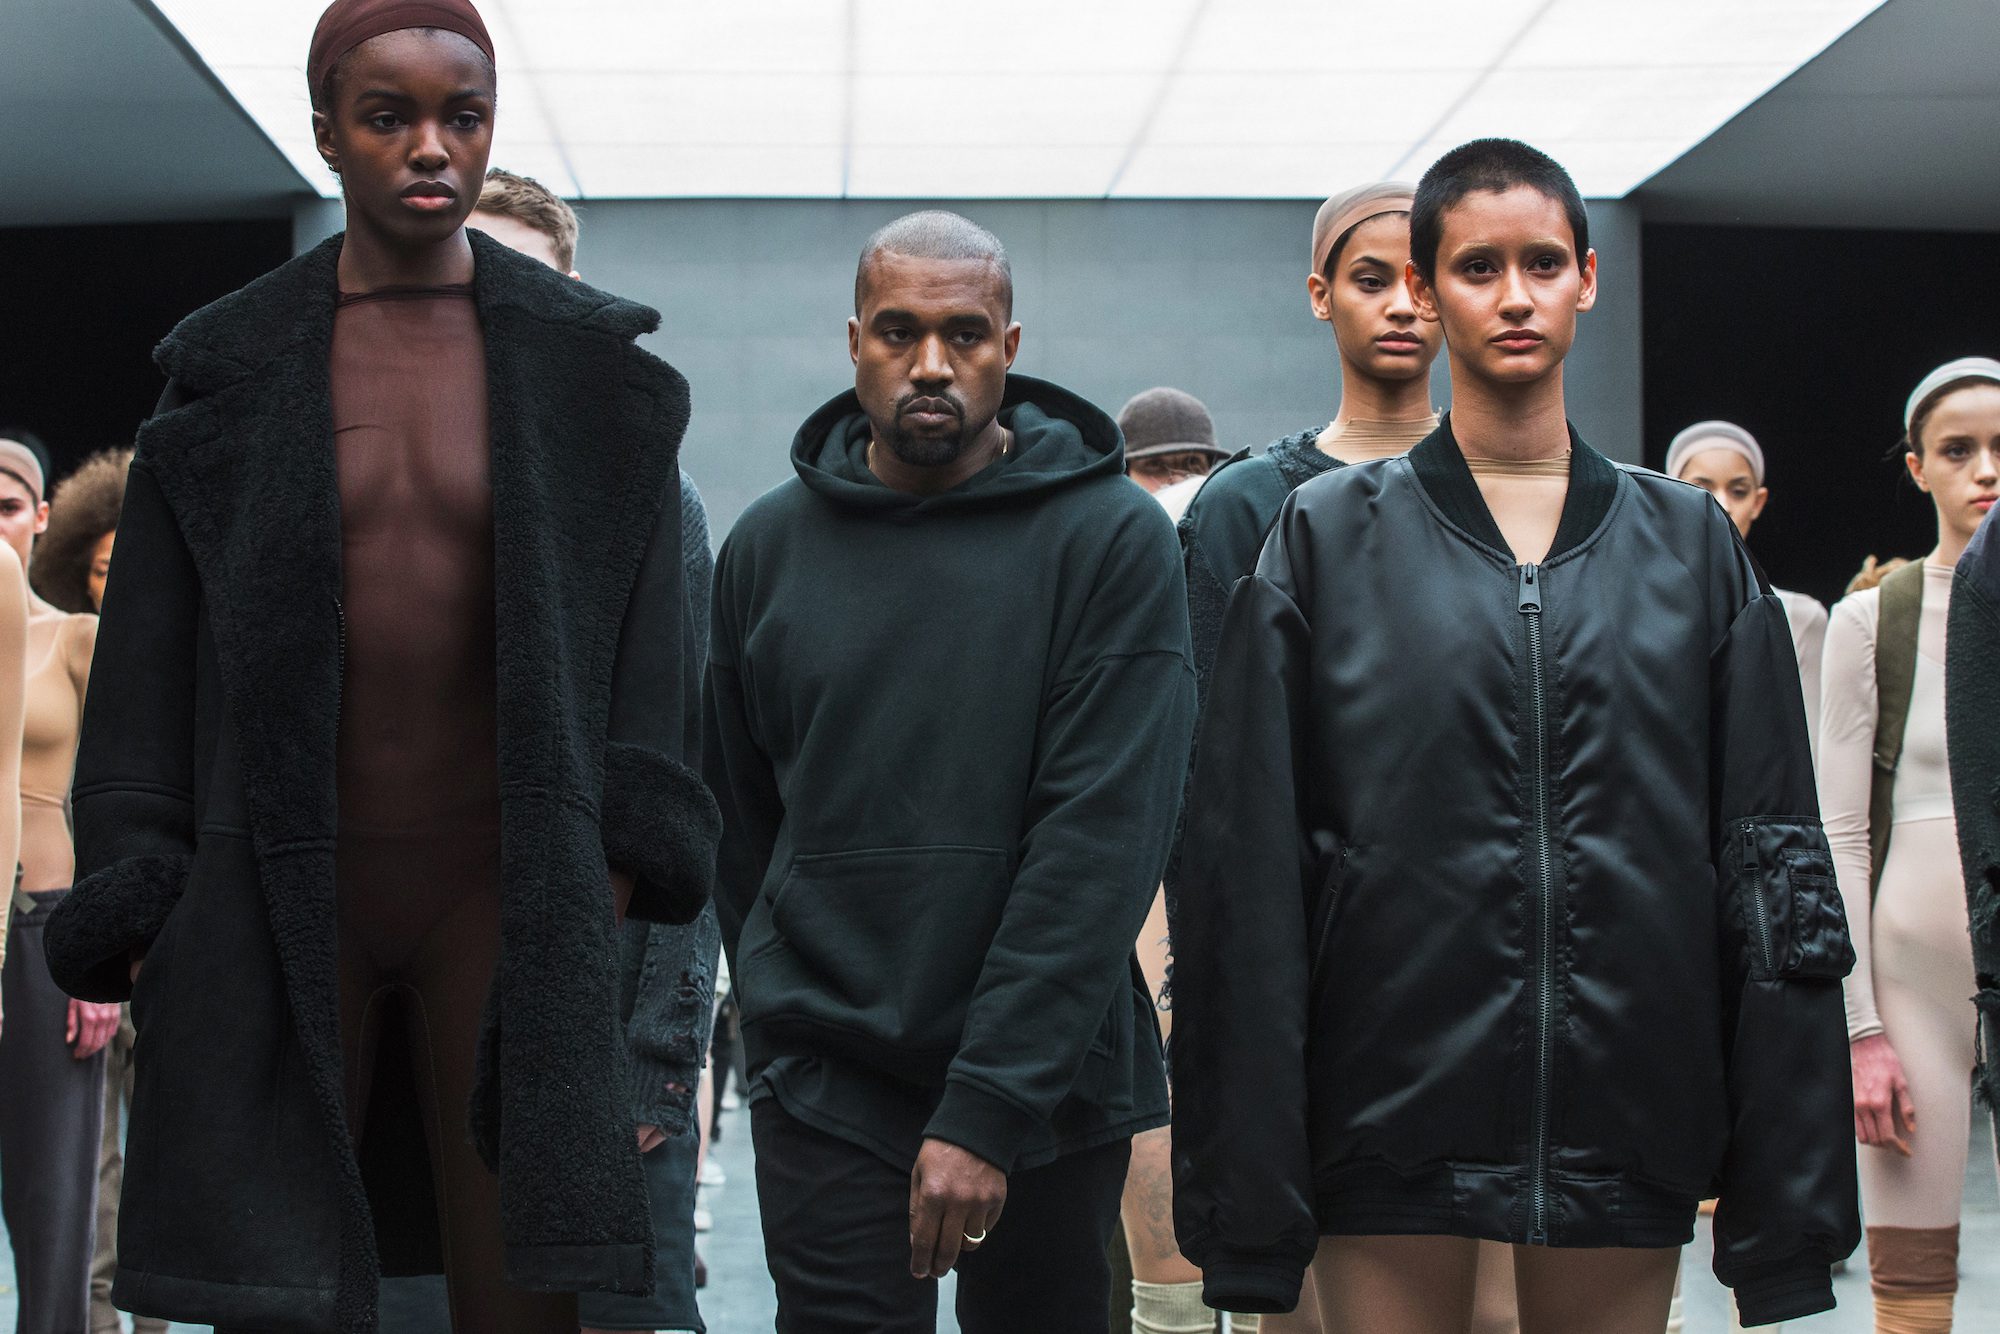 Adidas ends Kanye West partnership over antisemitism, hate speech